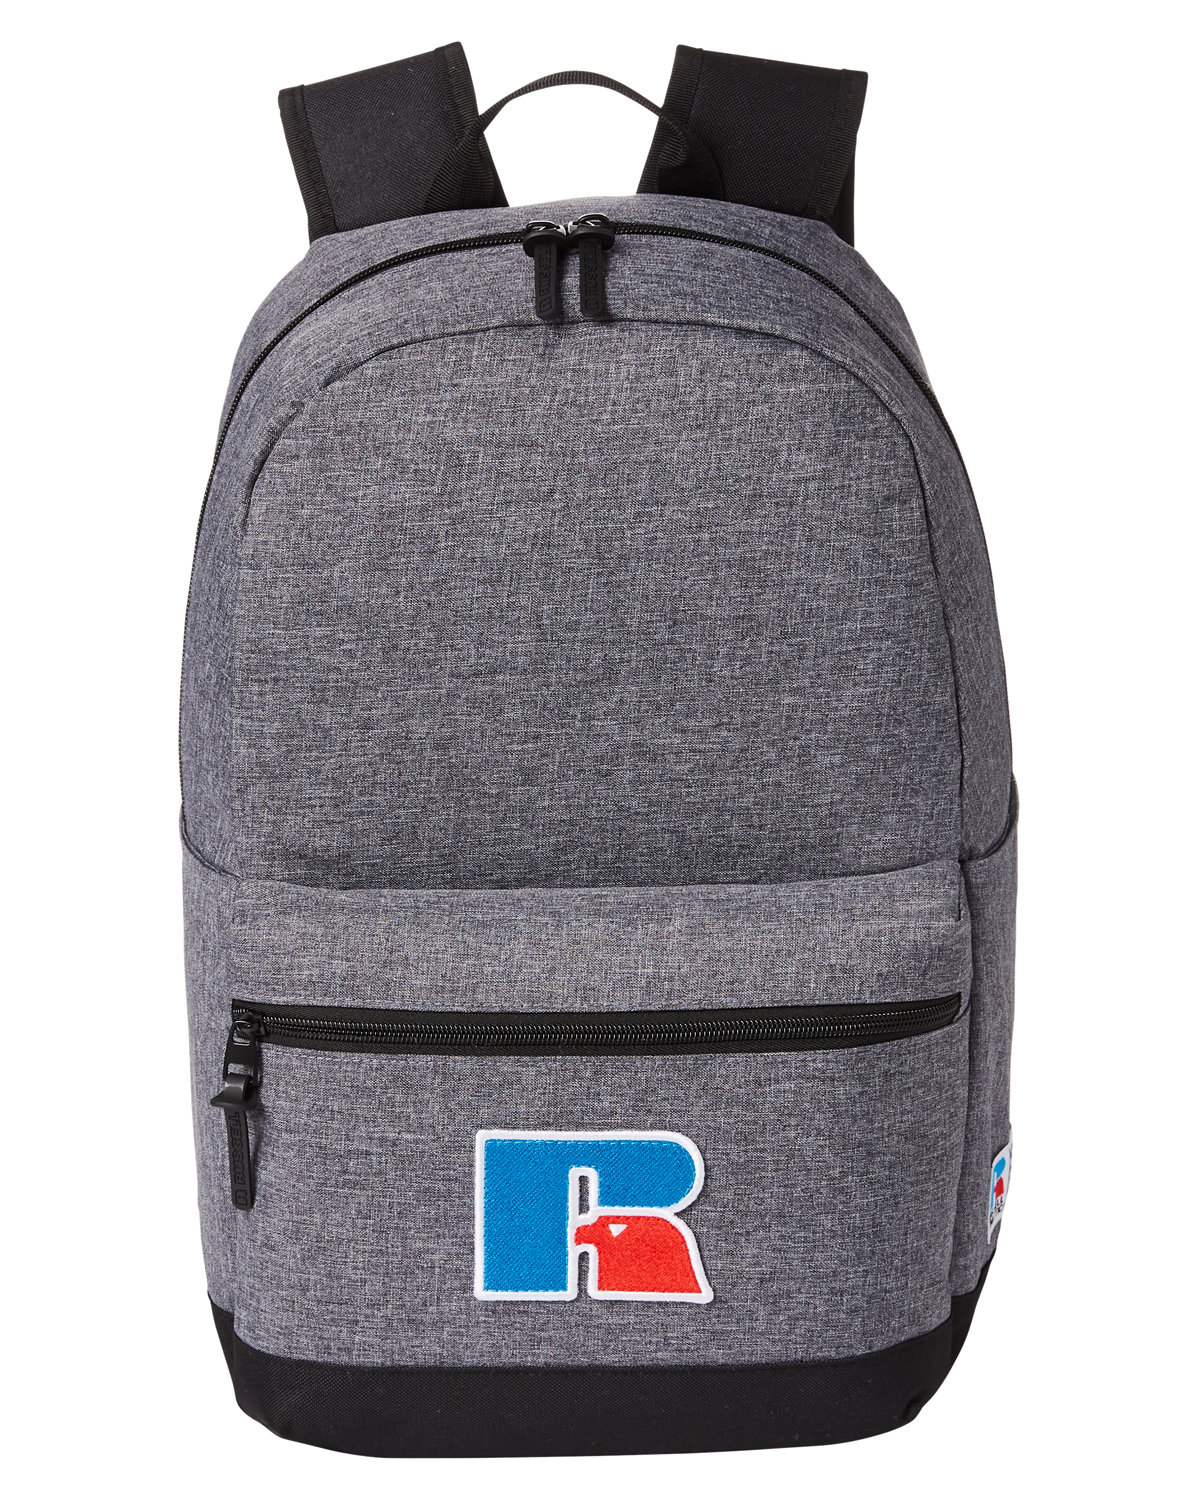 Breakaway Backpack-Russell Athletic